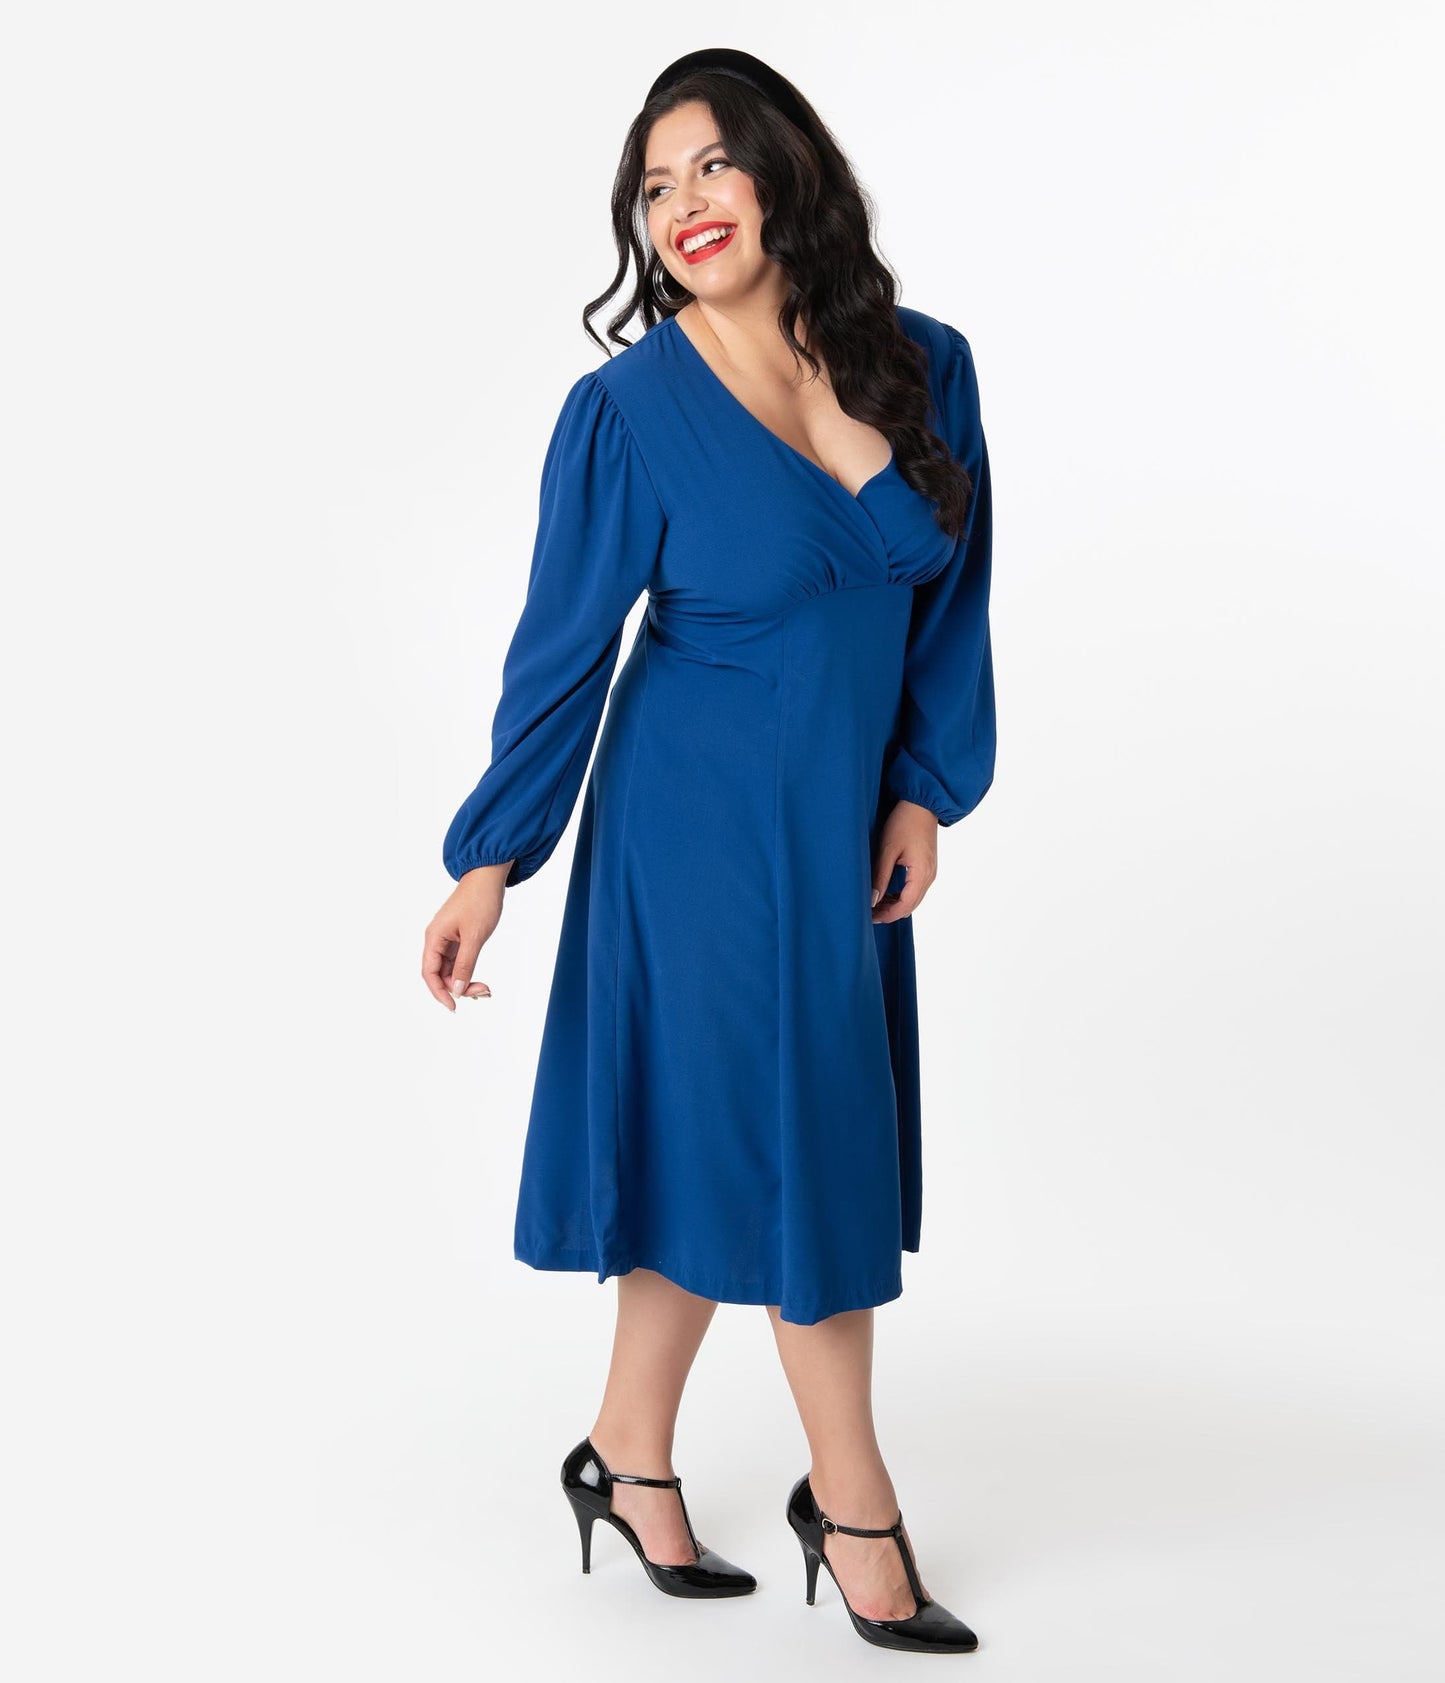 Micheline Pitt For Unique Vintage Plus Size 1950s Style Royal Blue Pris Swing Dress